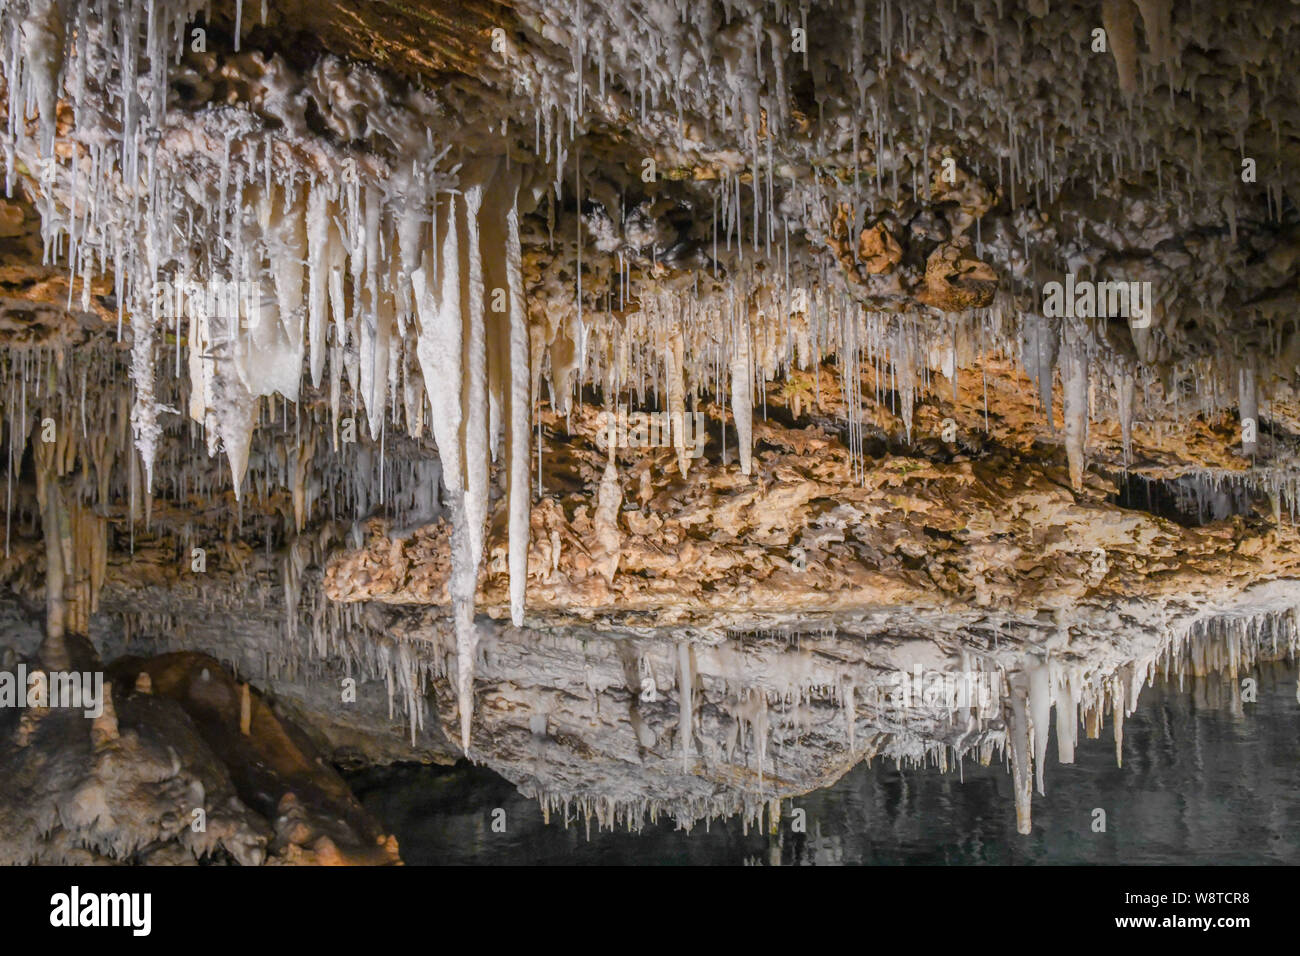 La Grotta dei Cristalli Bermuda - attrazione turistica in Hamilton Bermuda - acqua cristallina & lago sotterraneo - calcare stalattiti e stalagmiti Foto Stock